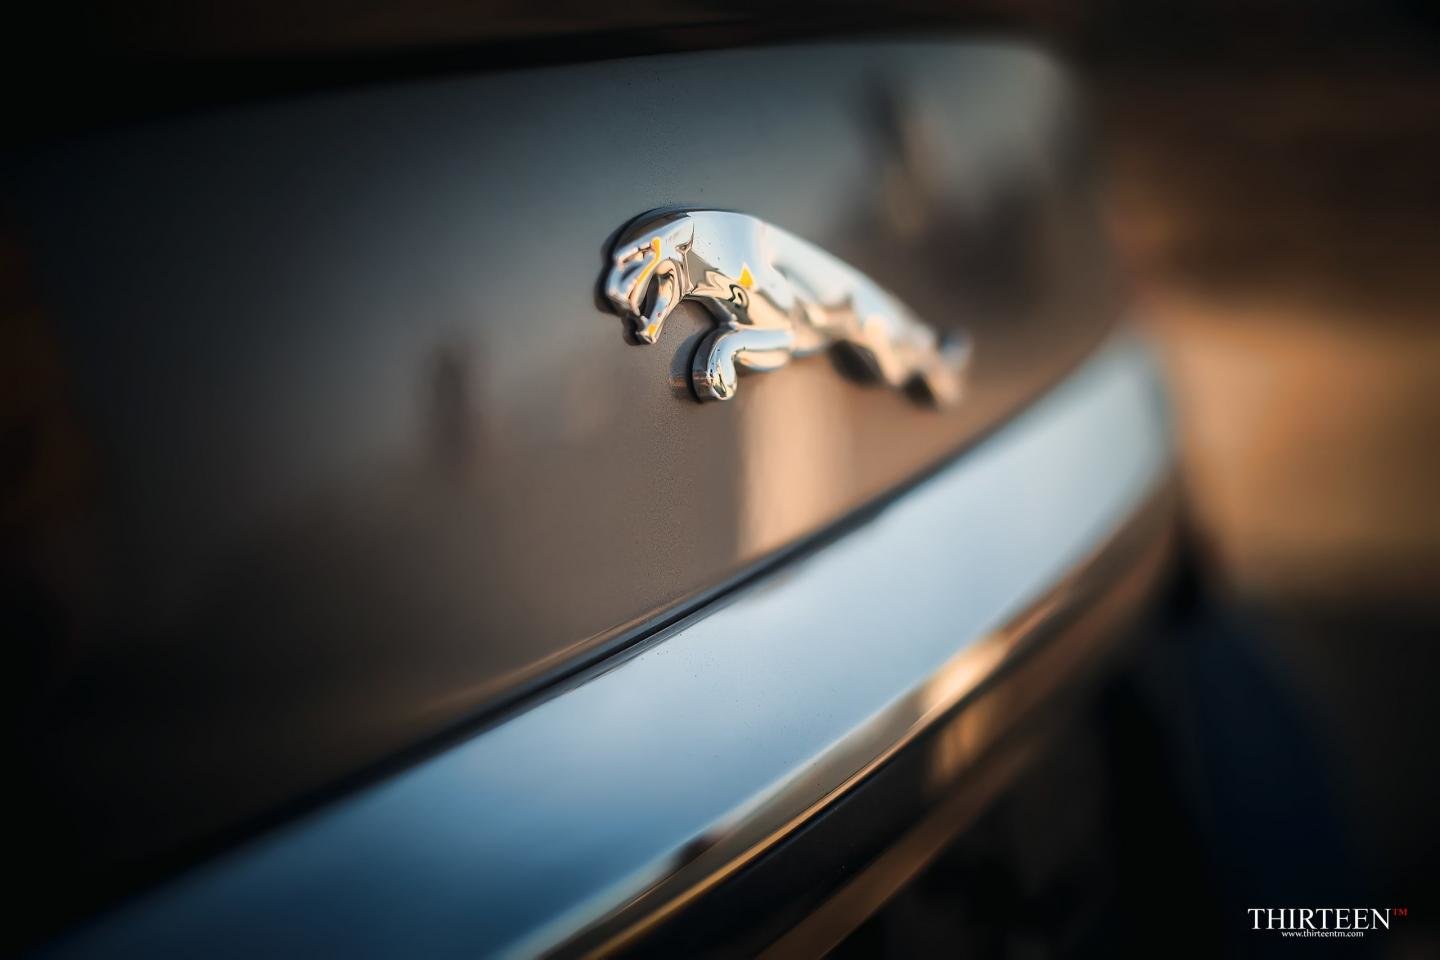 Best Jaguar car wallpaper ID:398176 for High Resolution hd 1440x960 desktop